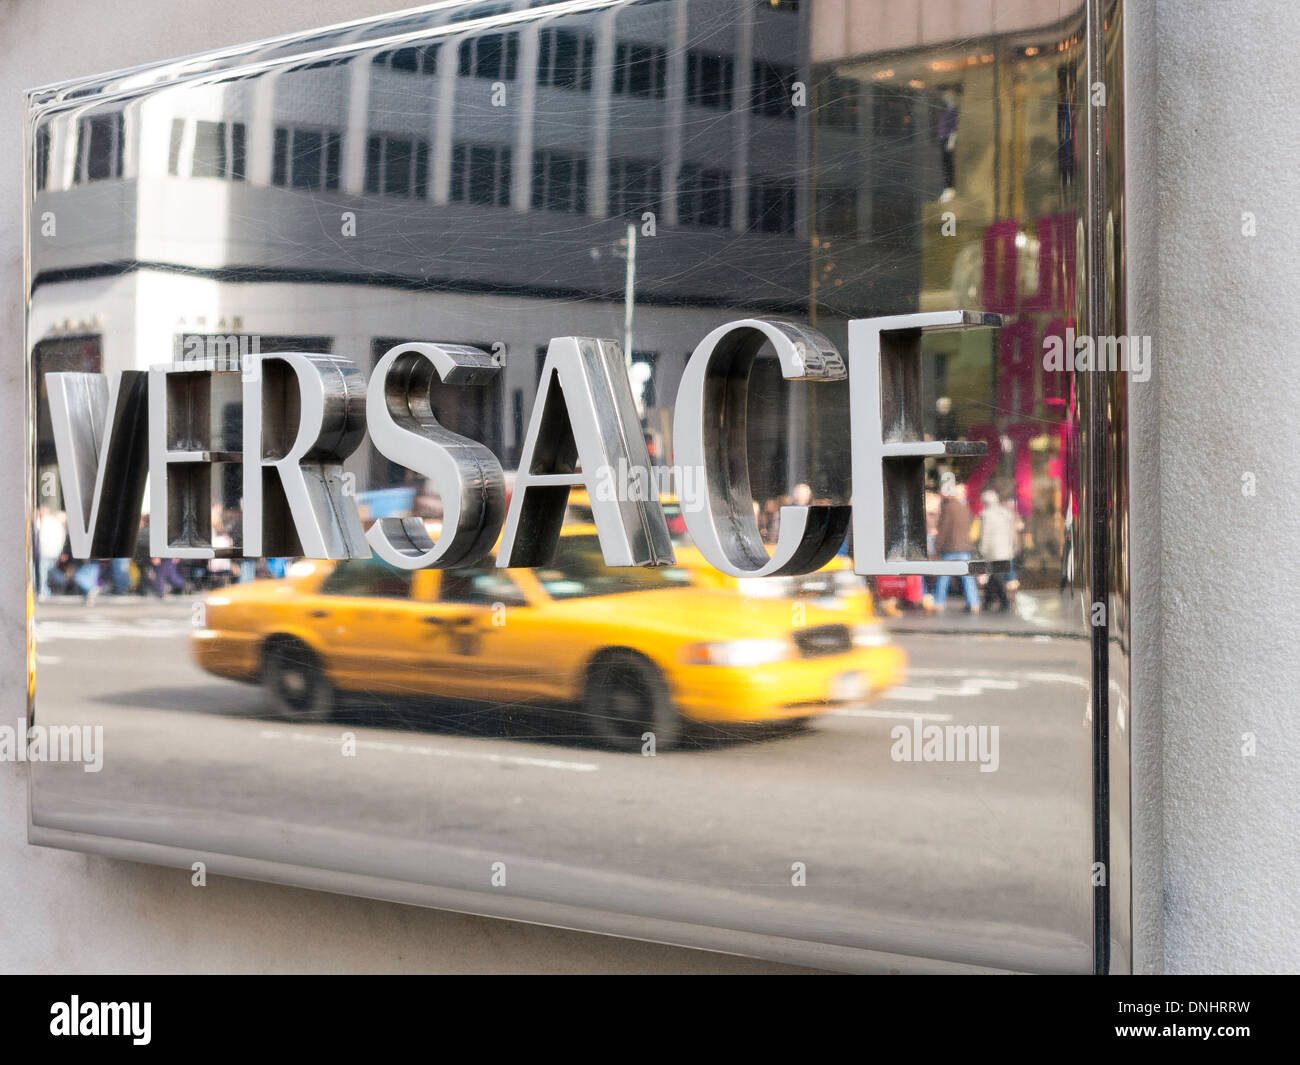 Versace réfléchissant Signe, NYC Banque D'Images